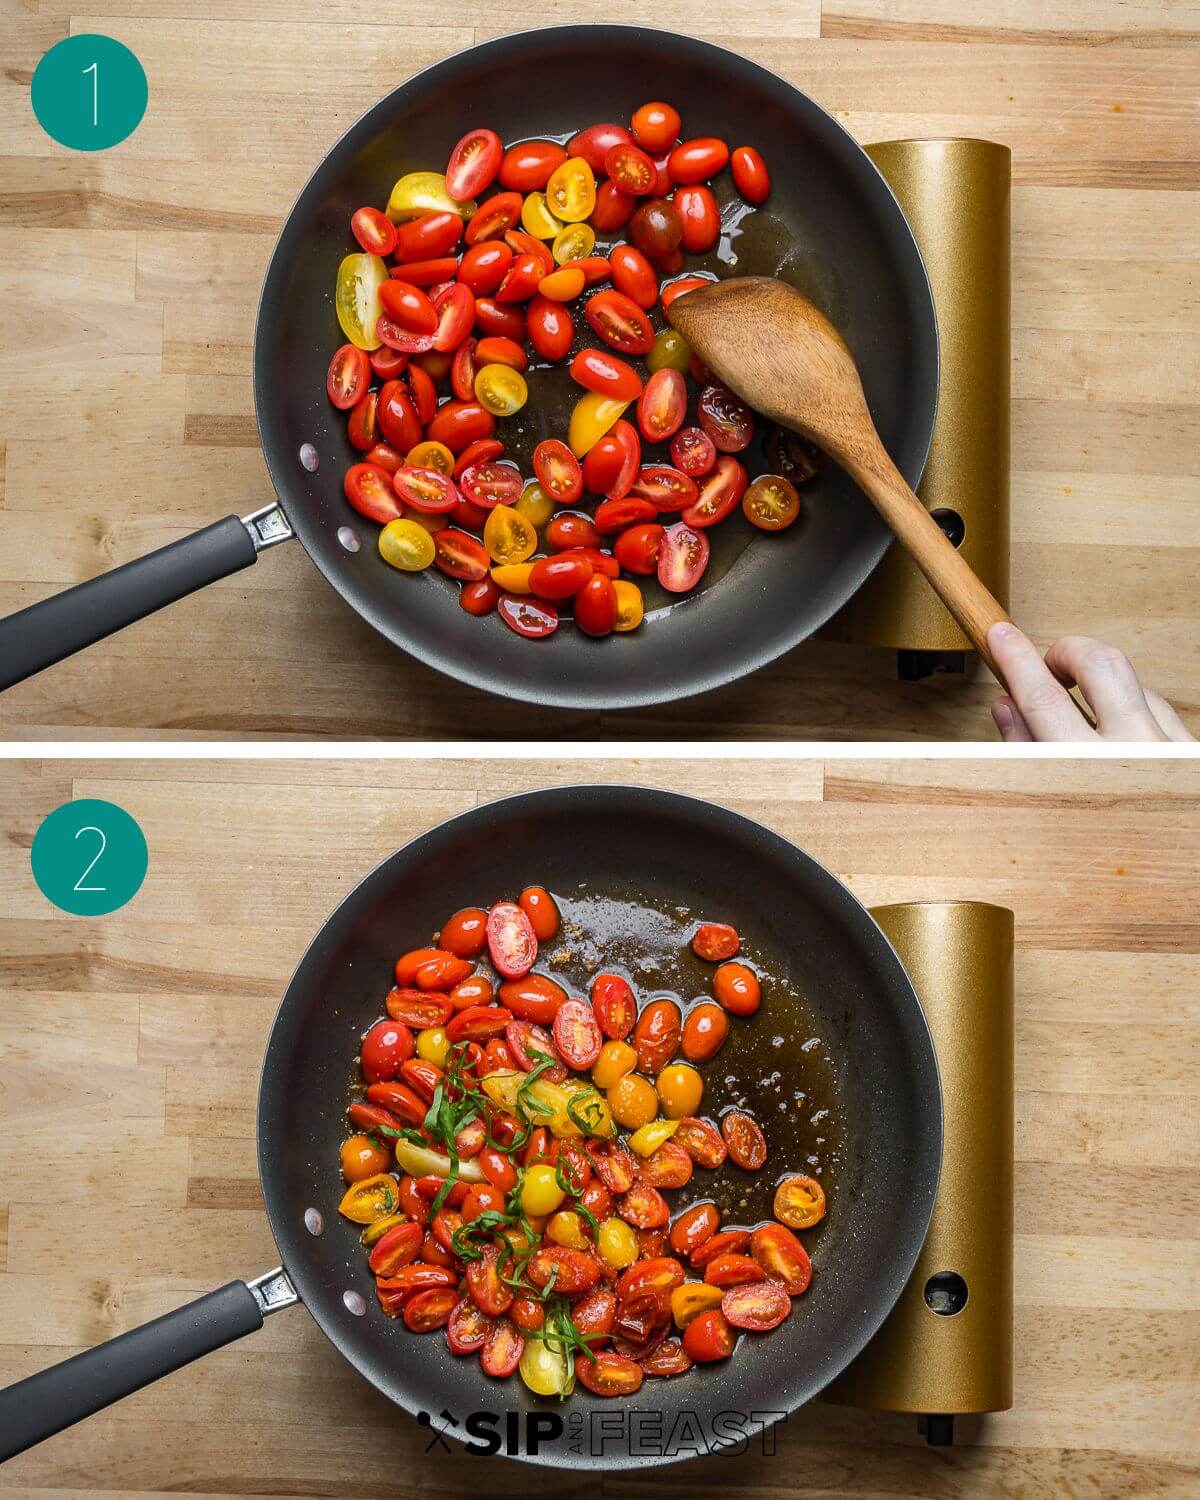 Tomato topping collage for potato frittata recipe.